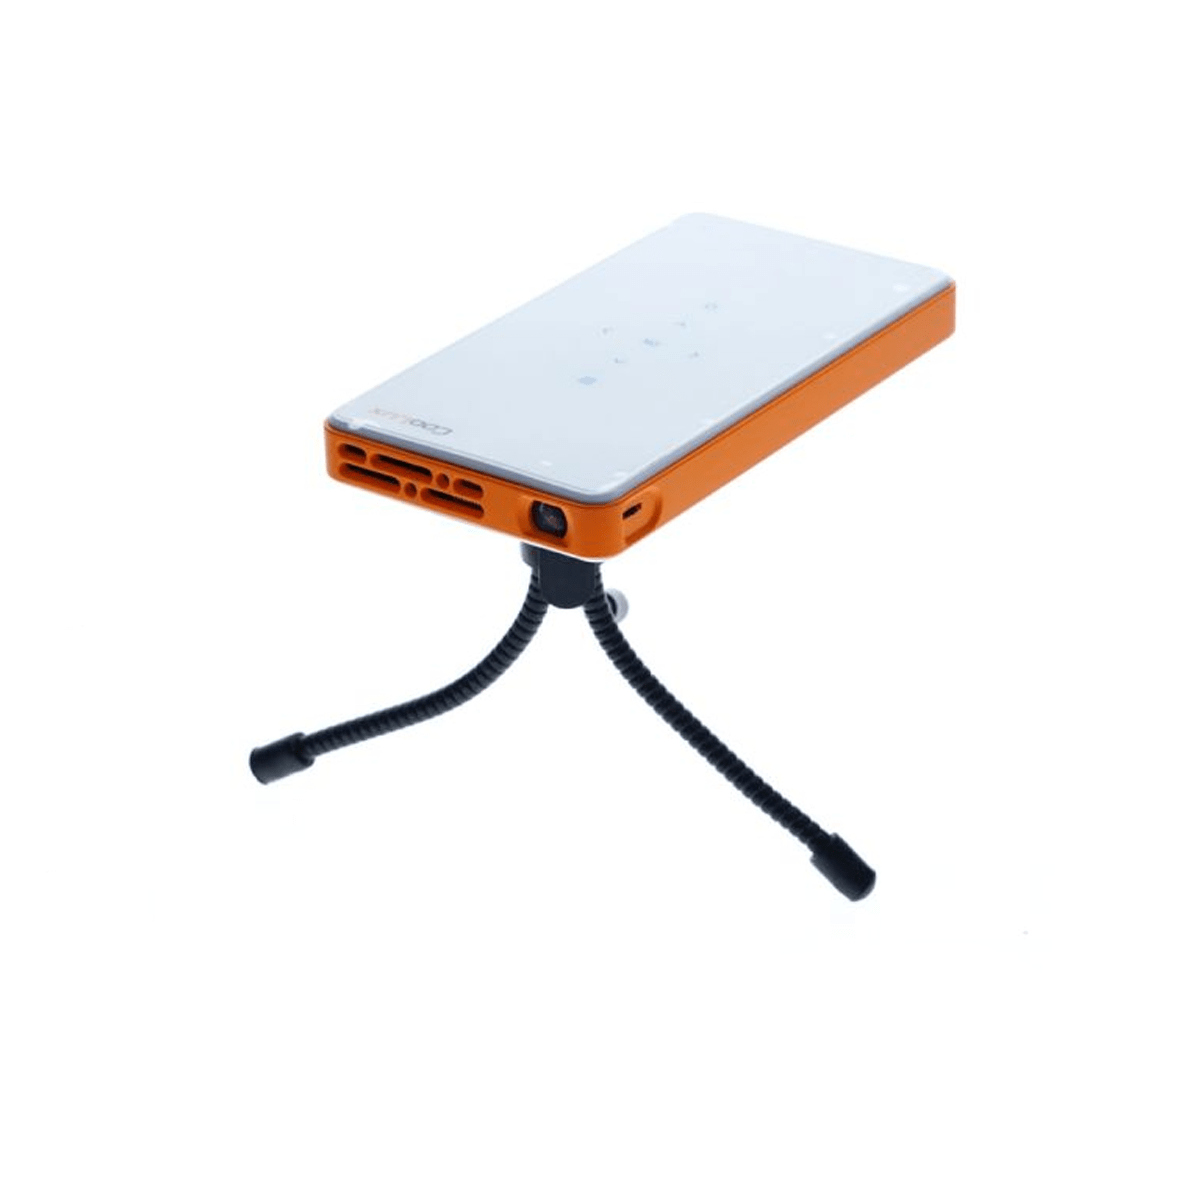 Coolux Q6-Classic Wireless Mini WiFi Portable Projector, White with Orange - SquareDubai